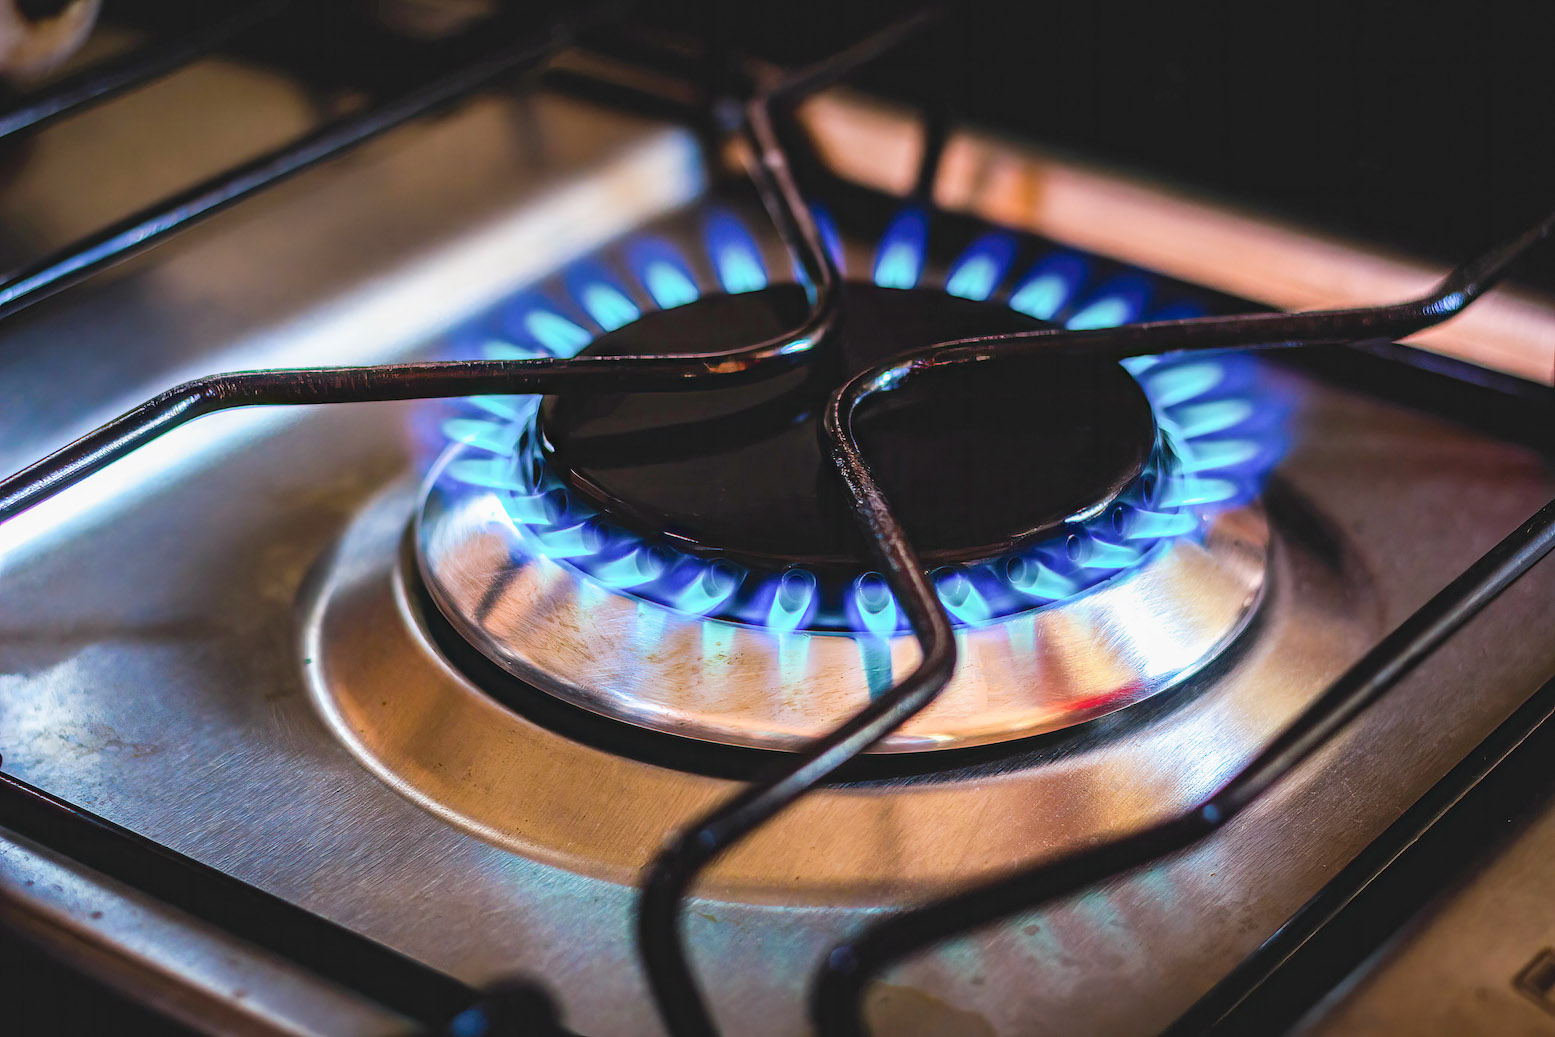 Tarifs réglementés du gaz : les raisons d'une nouvelle flamblée de 12,6% en octobre